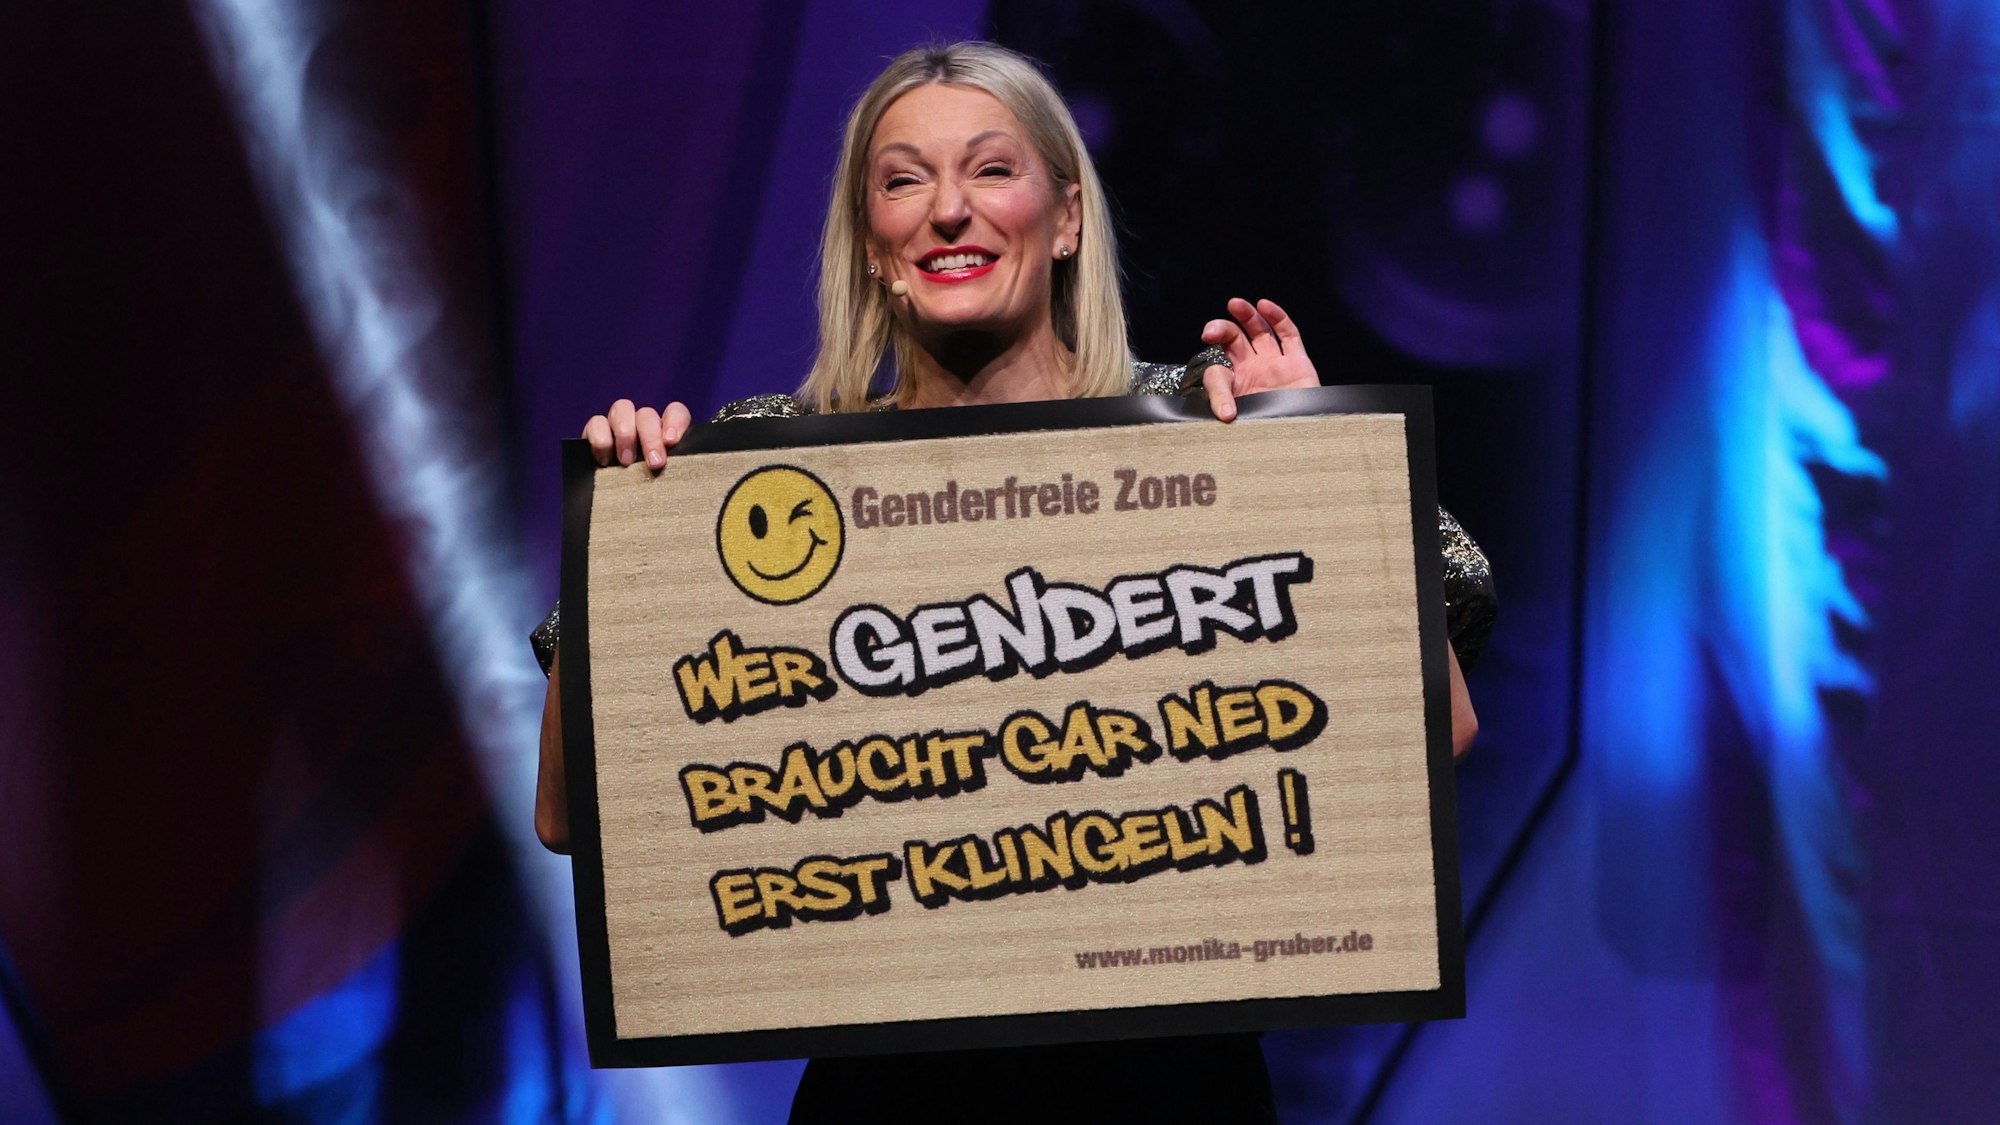 Die Kabarettistin Monika Gruber zeigt auf der Bühne eine Fußmatte, die bedruckt ist mit den Worten „Genderfreie Zone – Wer gendert, braucht gar ned erst klingeln!“

